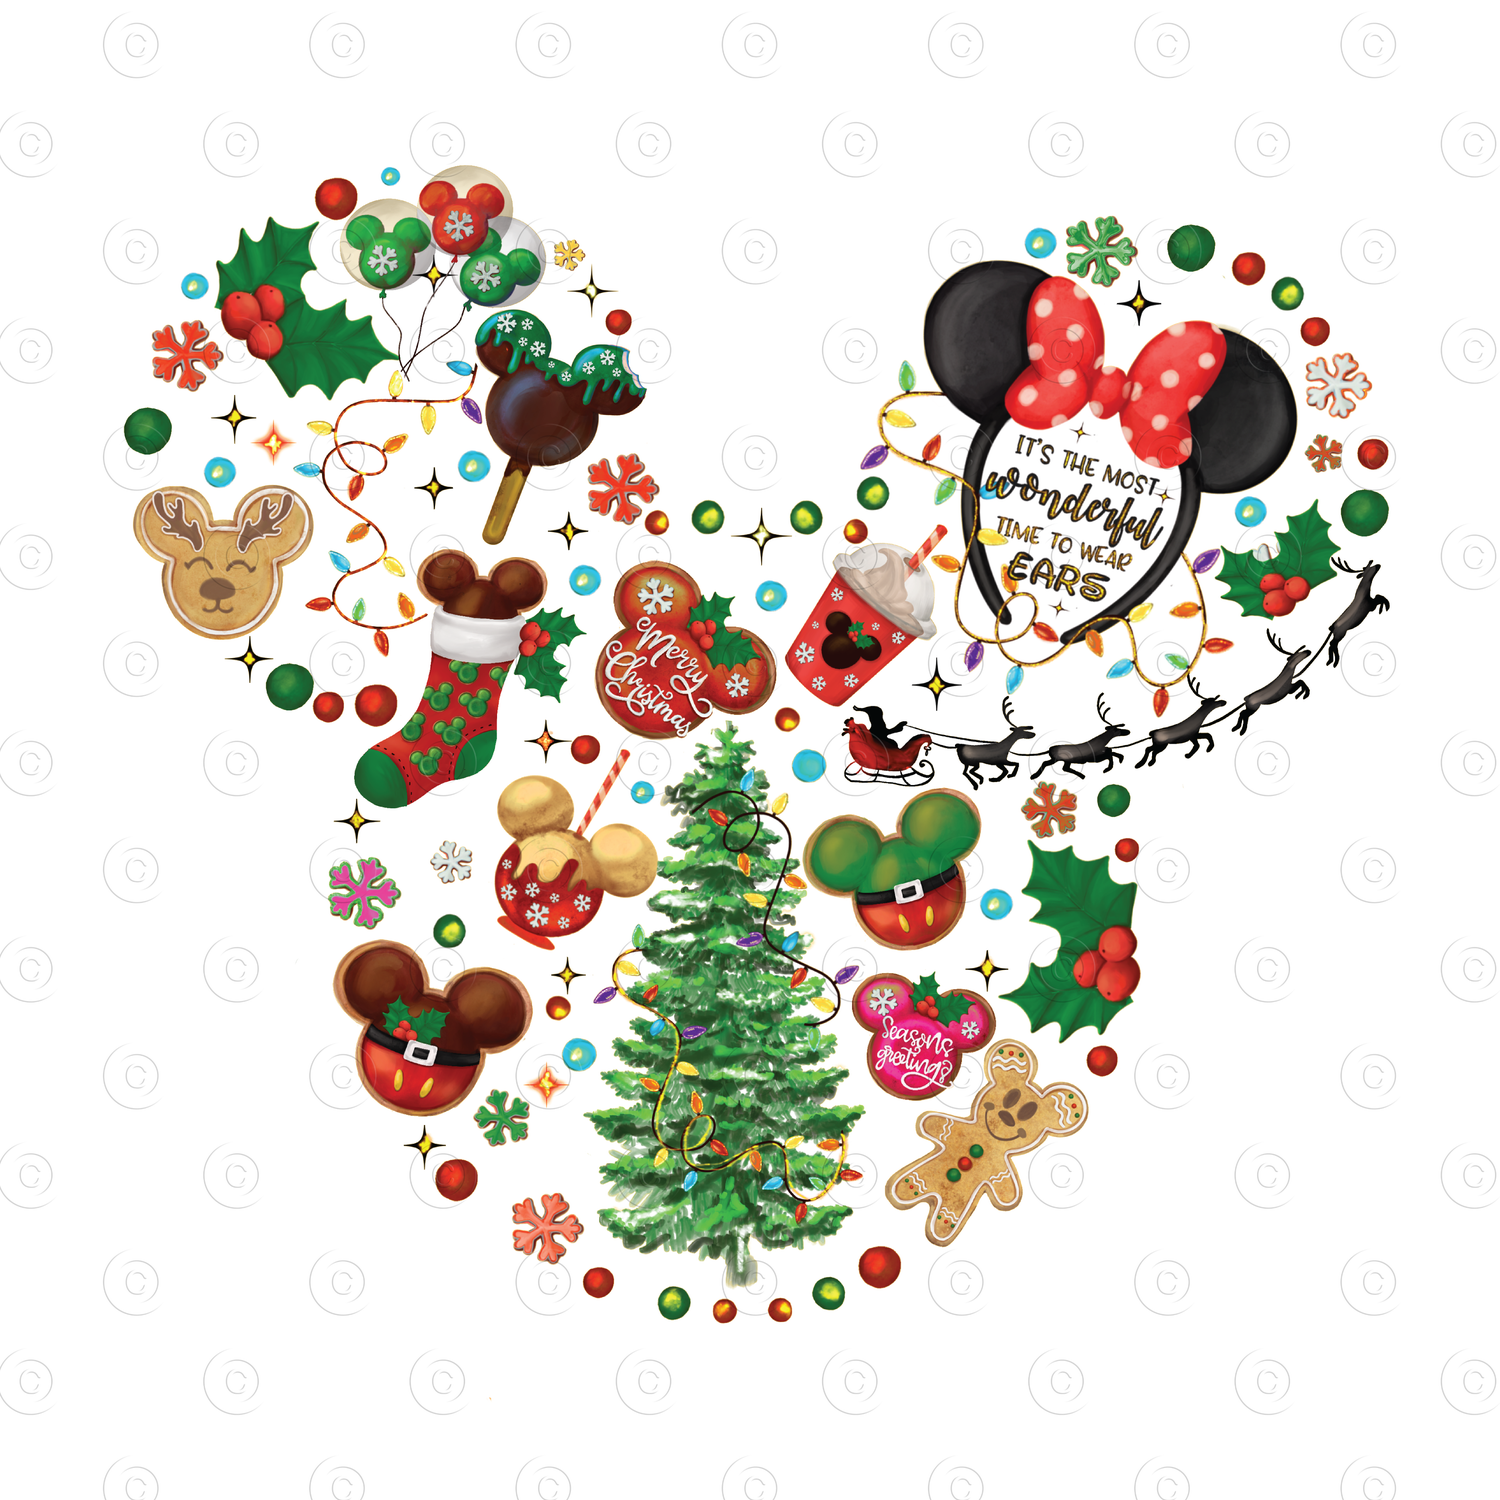 Christmas Magic Kingdom Christmas magic Kingdom Shirt Mouse Ears Tree Magic Kingdom Magic Kingdom Christmas Christmas Magic Mickey Christmas